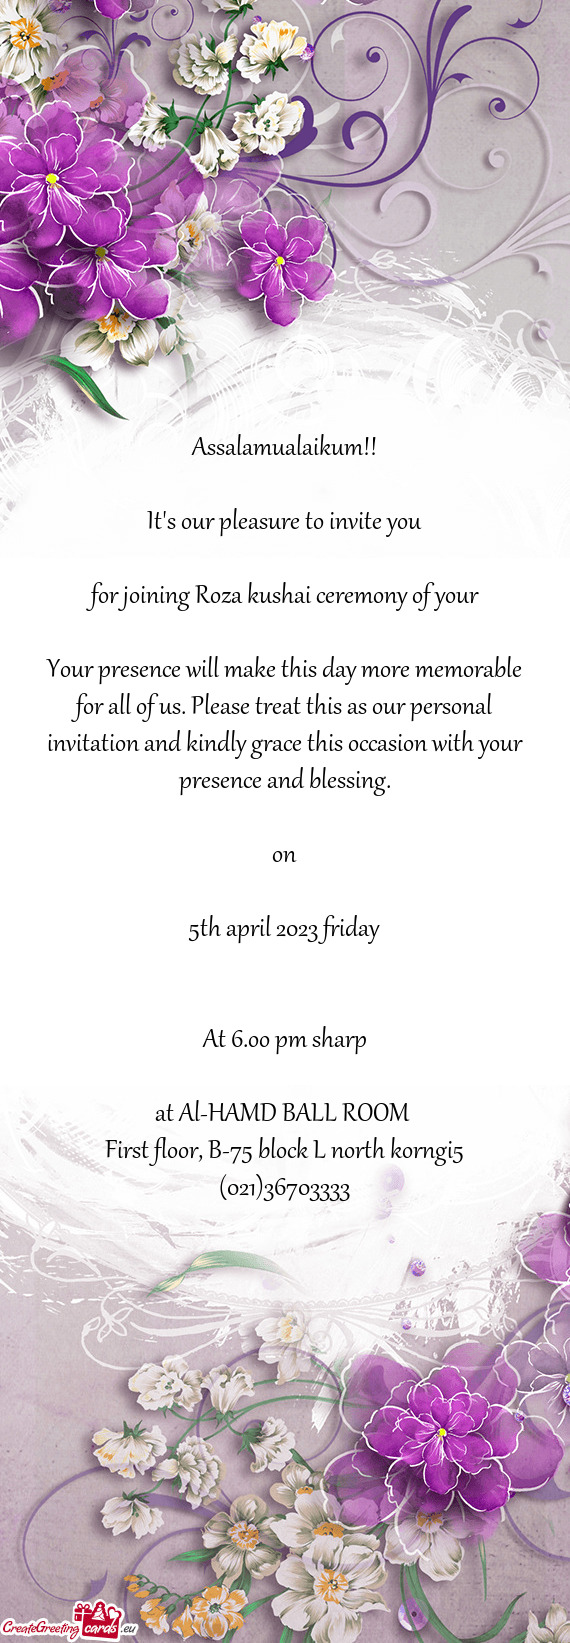 For joining Roza kushai ceremony of your